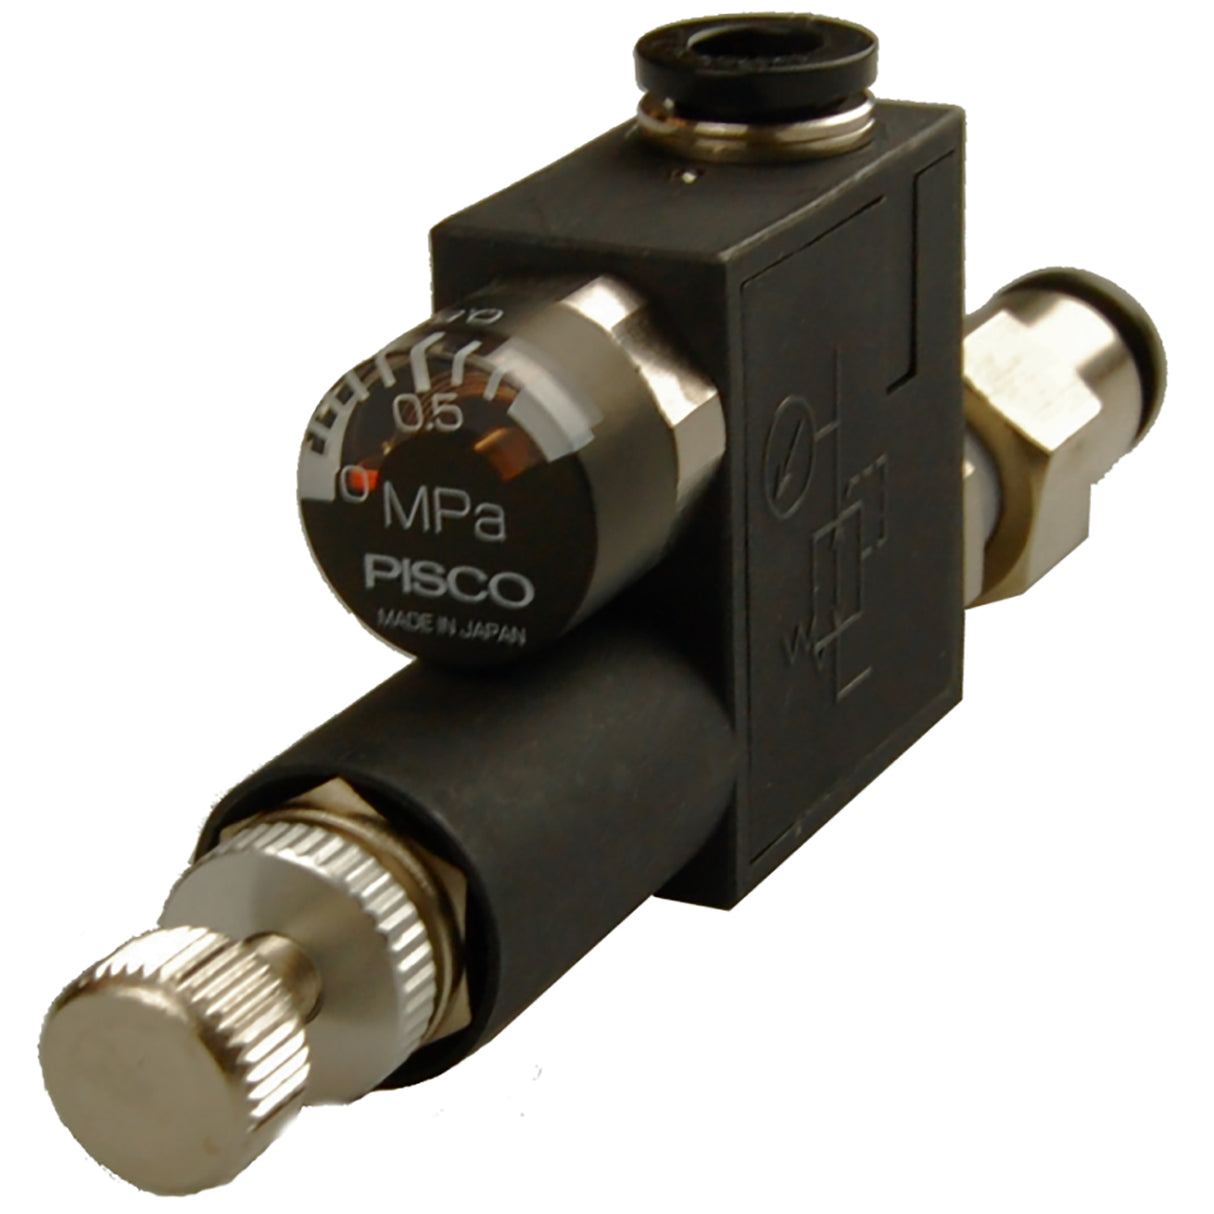 Pressure control valve 1/8" x 6